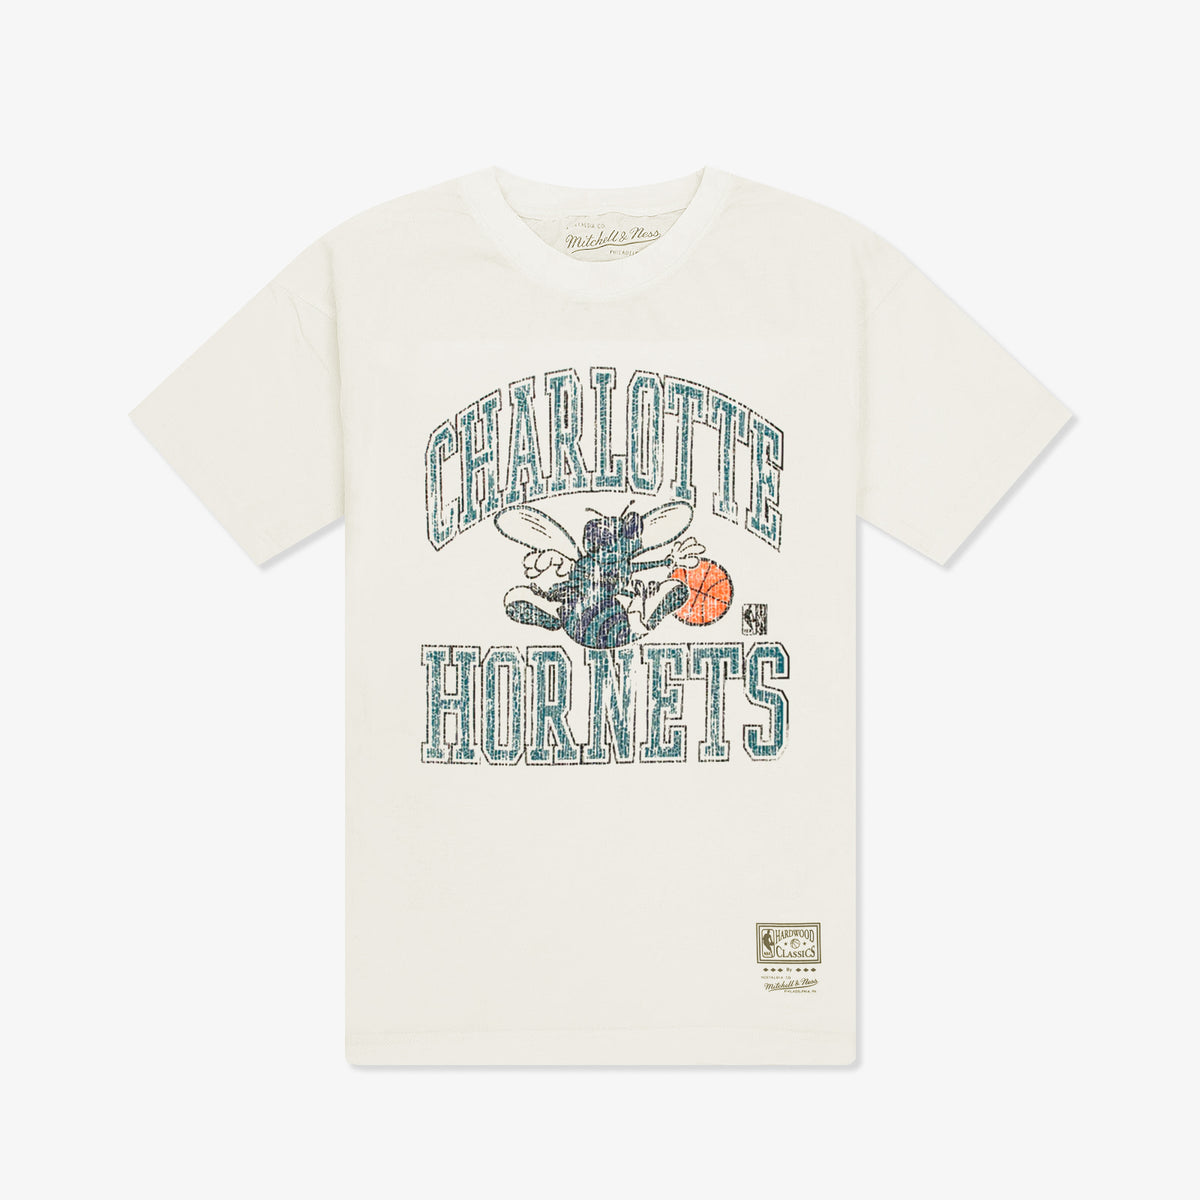 Charlotte Hornets Black T-Shirt - Unisex - 100% Cotton - S, M, L, XL